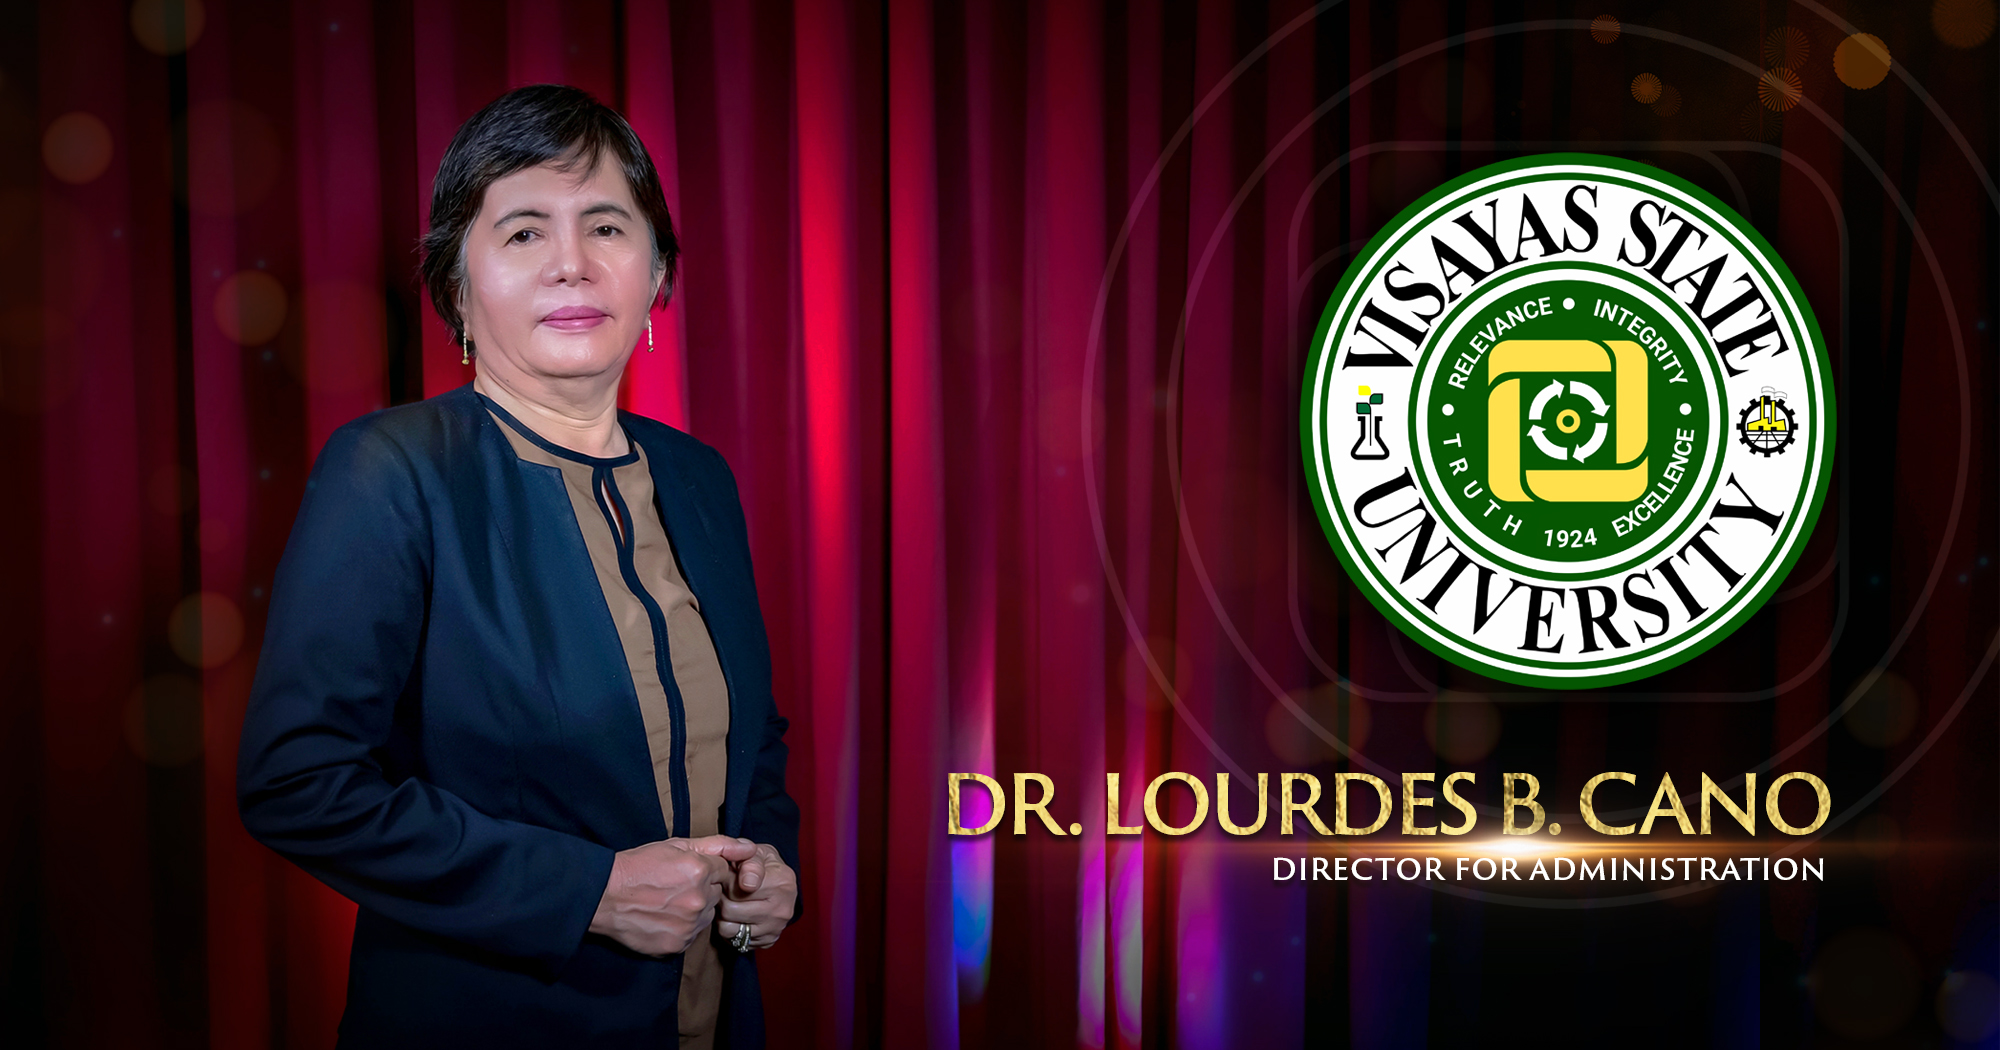 Dr. Lourdes B. Cano